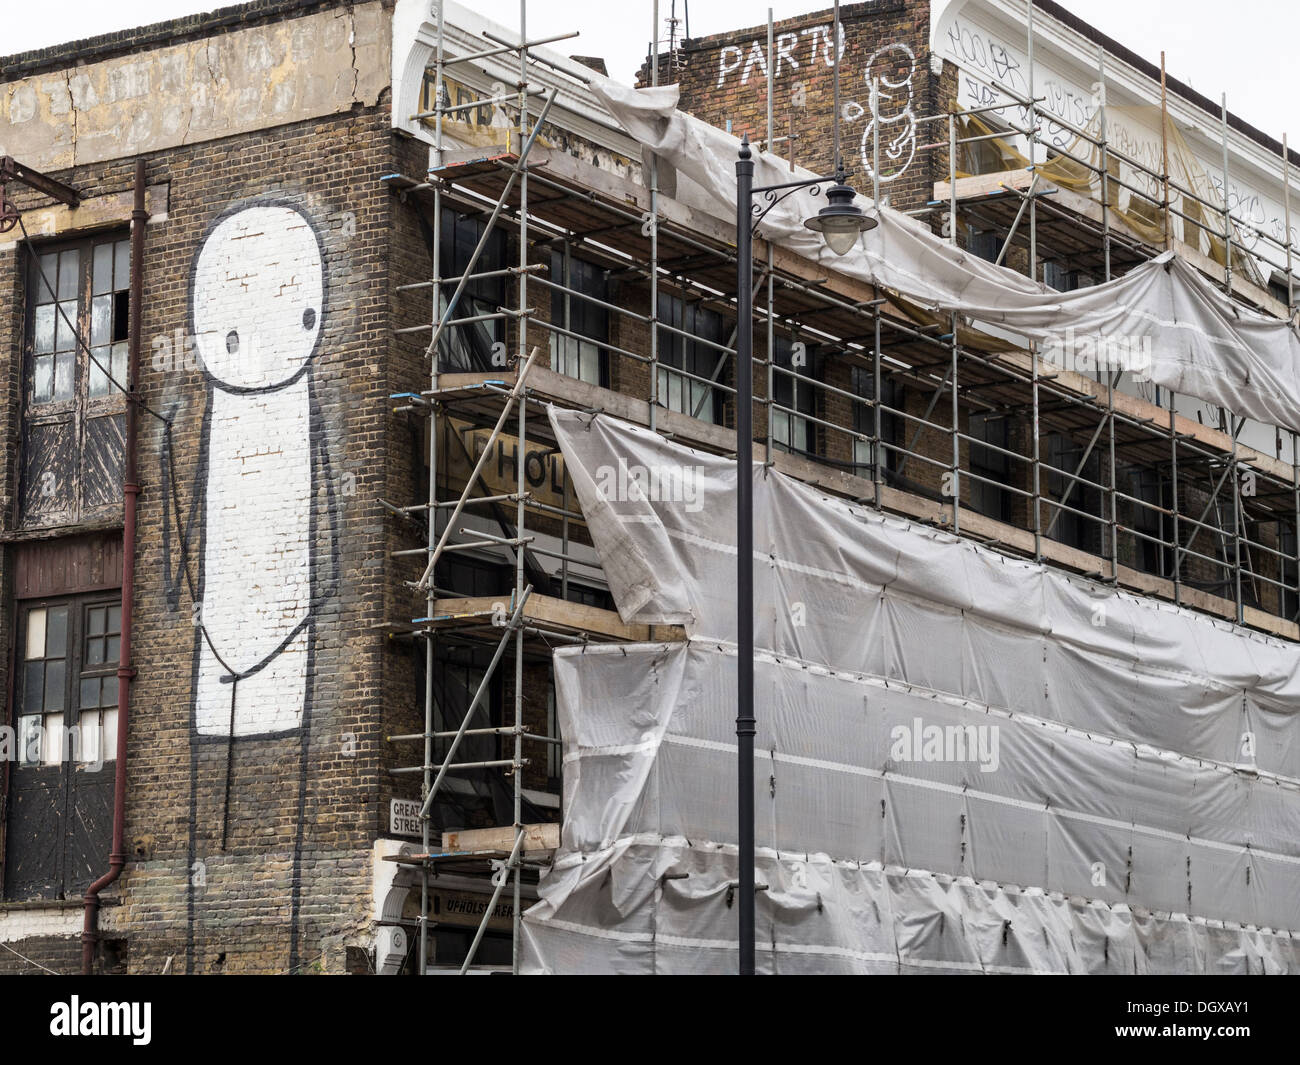 Arte di strada dall'artista Stik sul lato di un edificio rinnovato nella zona est di Londra Foto Stock